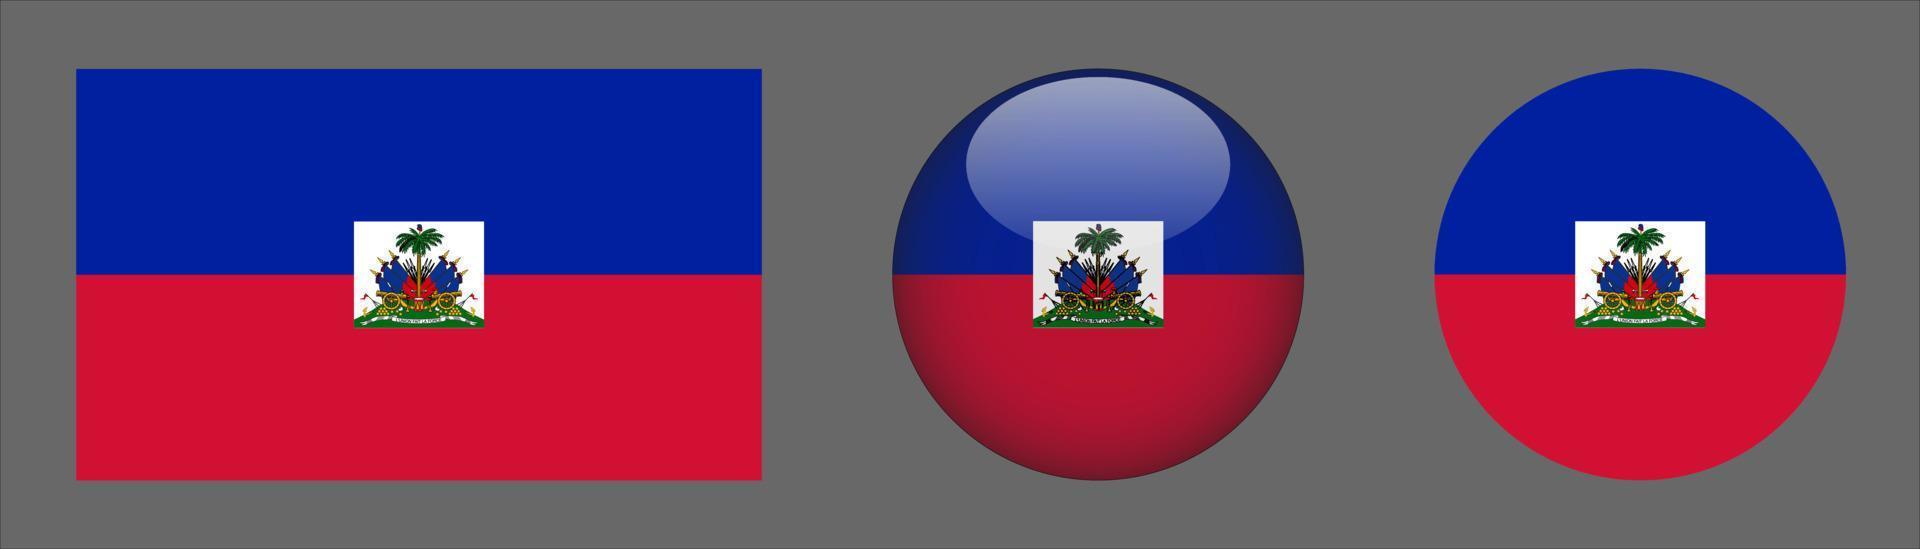 haiti flag set collection, original größenverhältnis, 3d gerundet und flach gerundet vektor